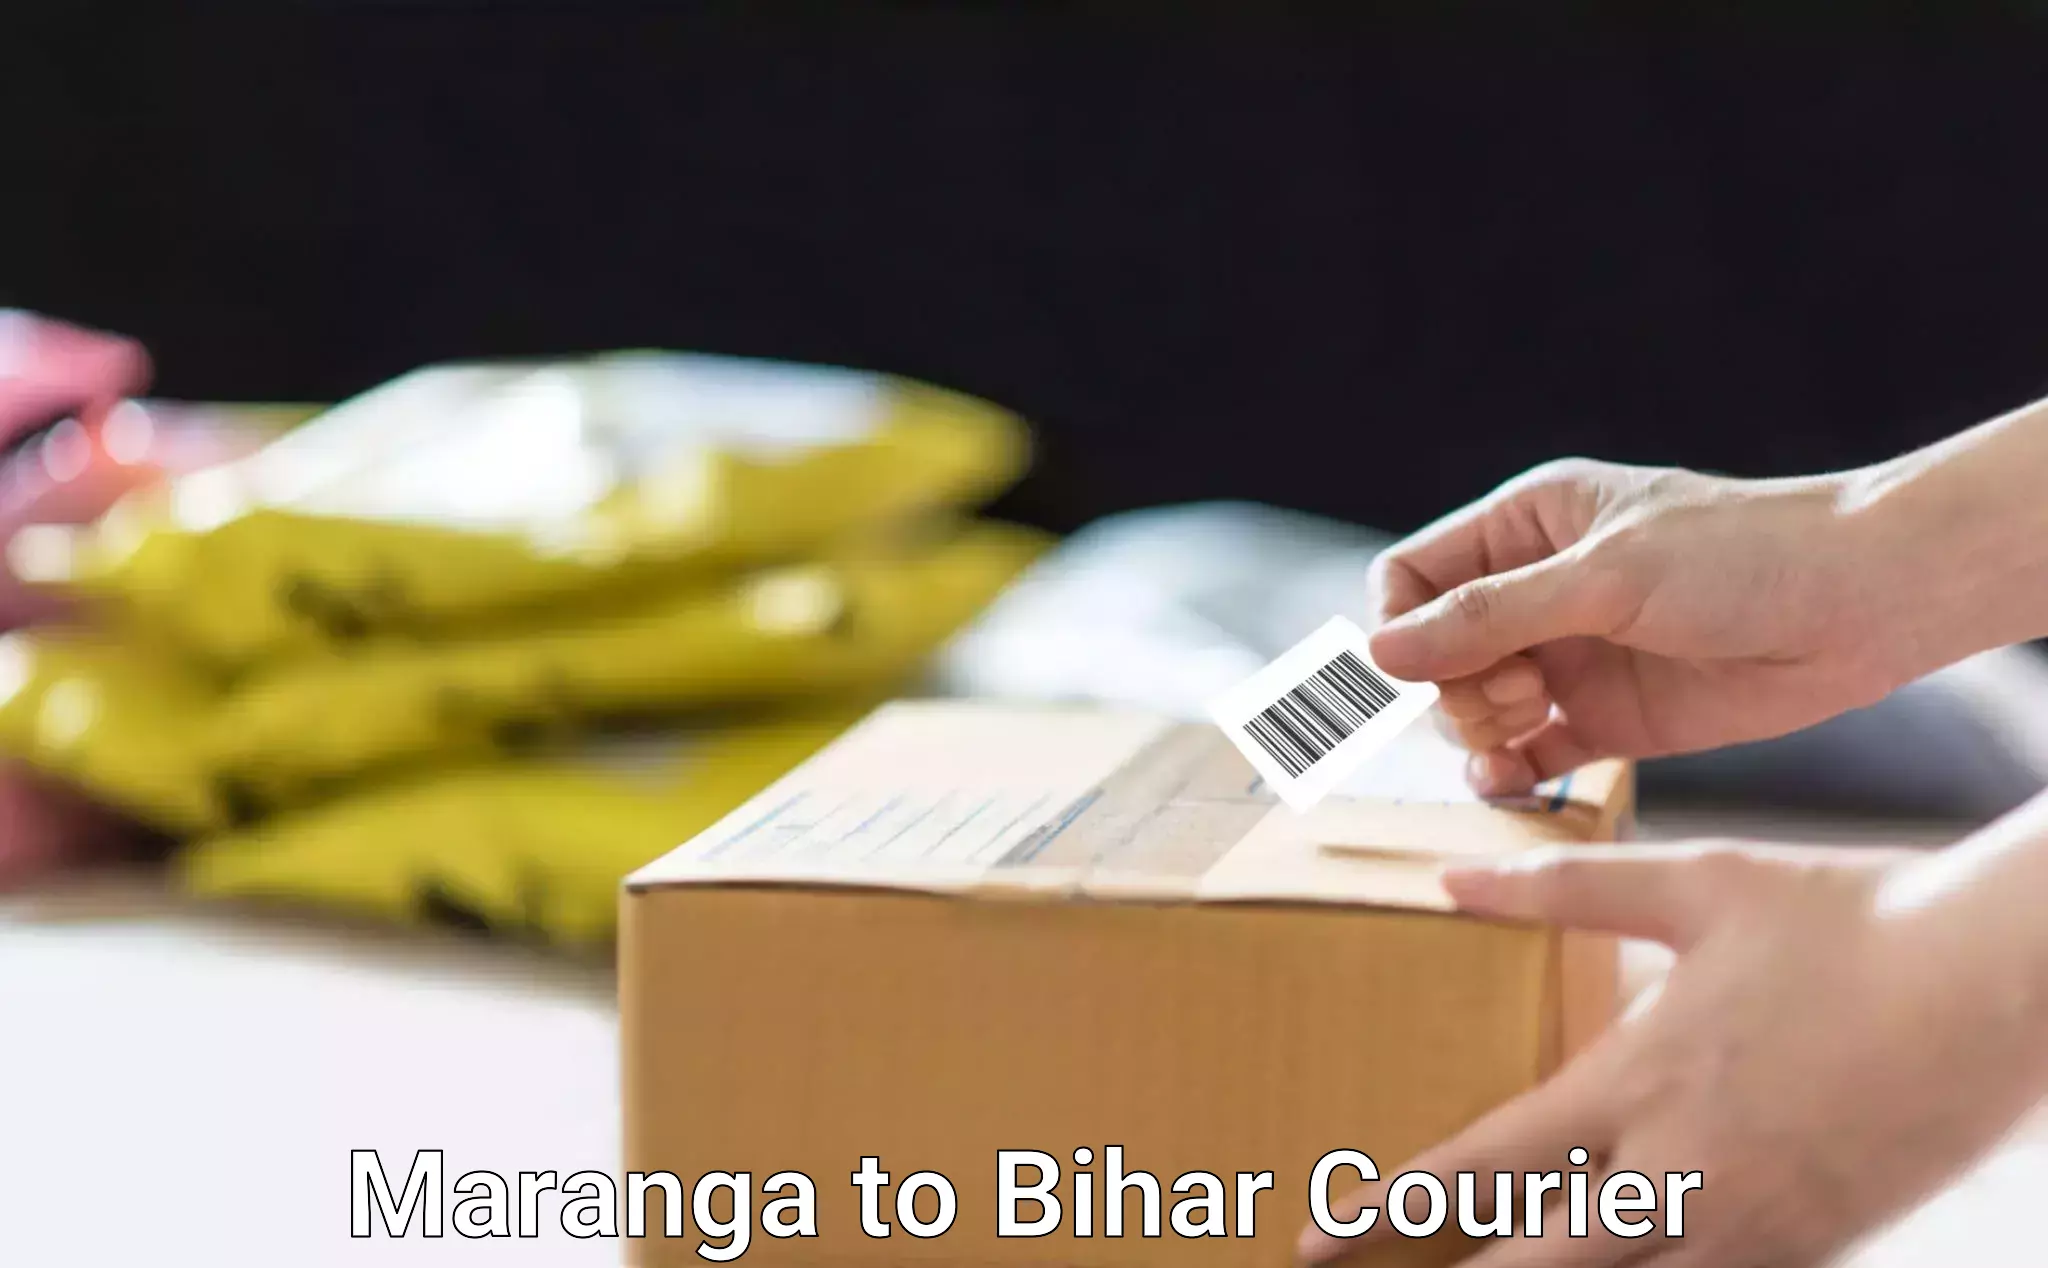 Household transport experts Maranga to Bihar